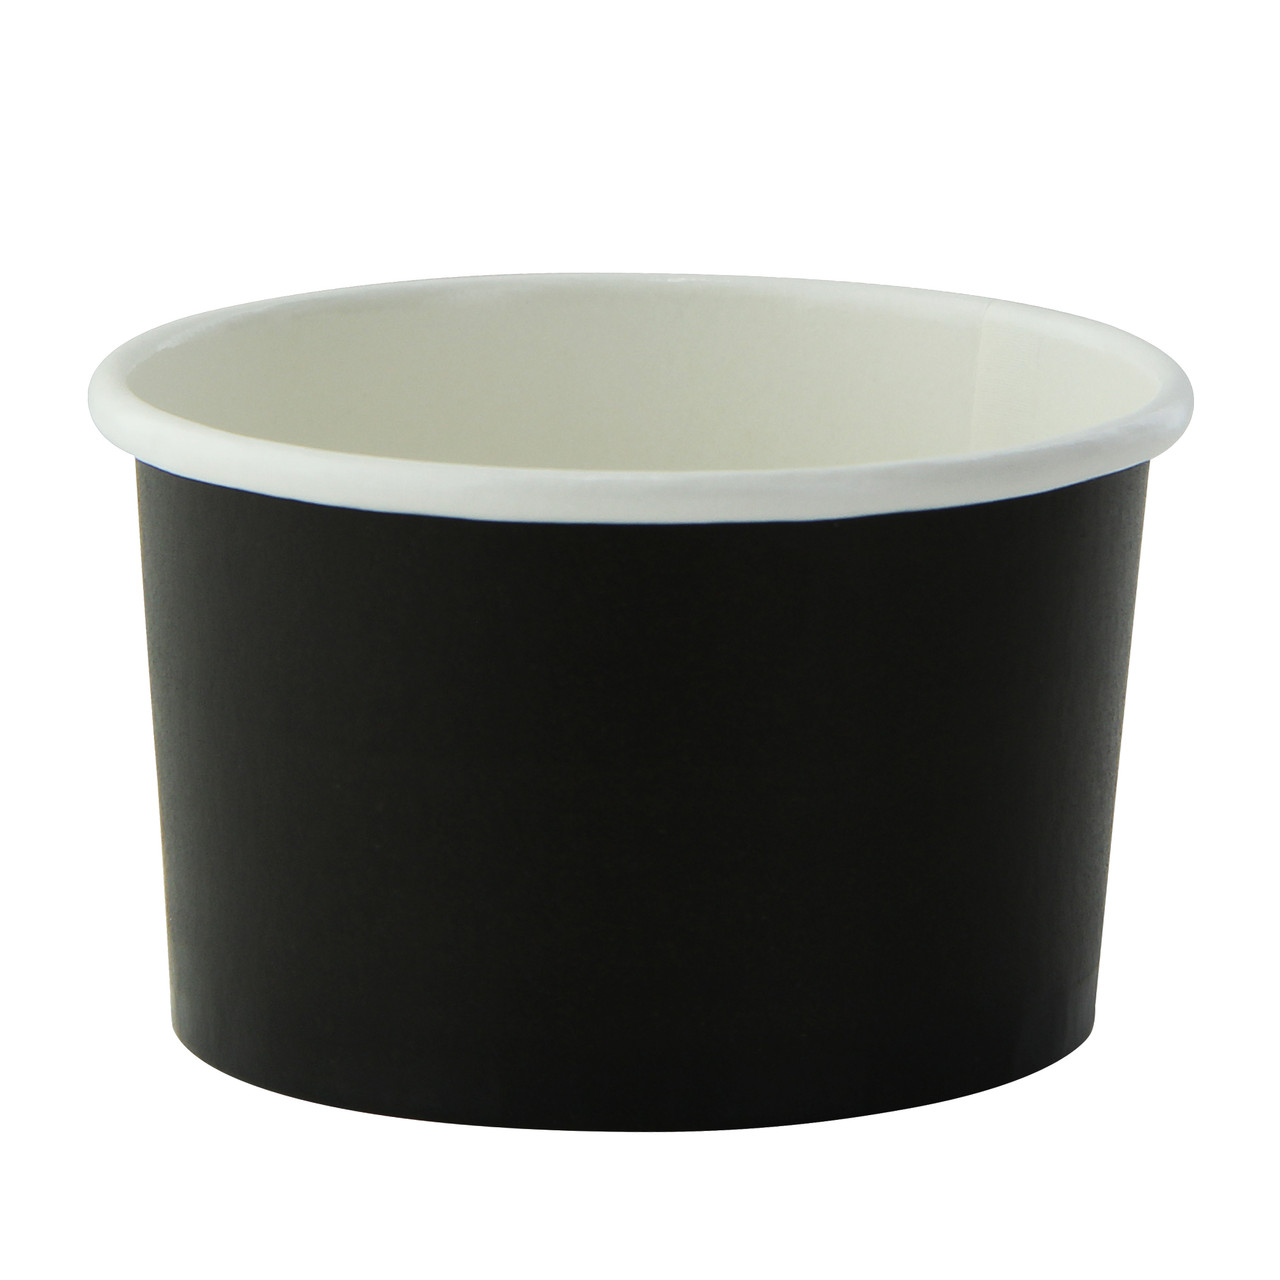 Black Paper Cup - 2oz D:2.4in H:1.4in - 1000 pcs